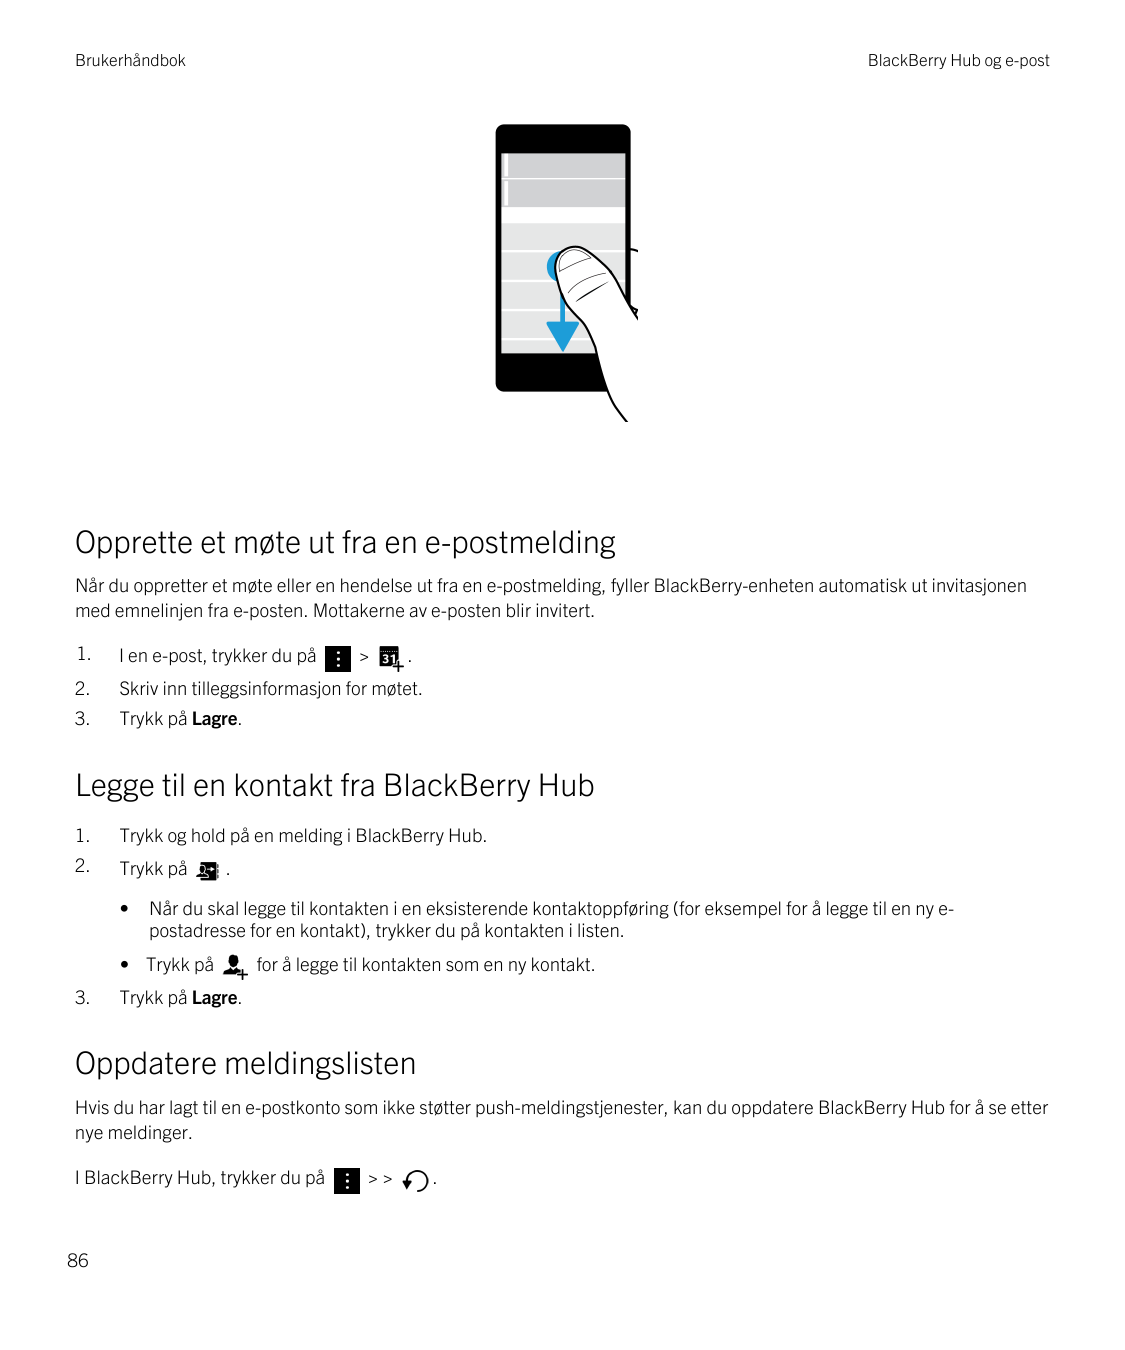 BrukerhåndbokBlackBerry Hub og e-postOpprette et møte ut fra en e-postmeldingNår du oppretter et møte eller en hendelse ut fra e